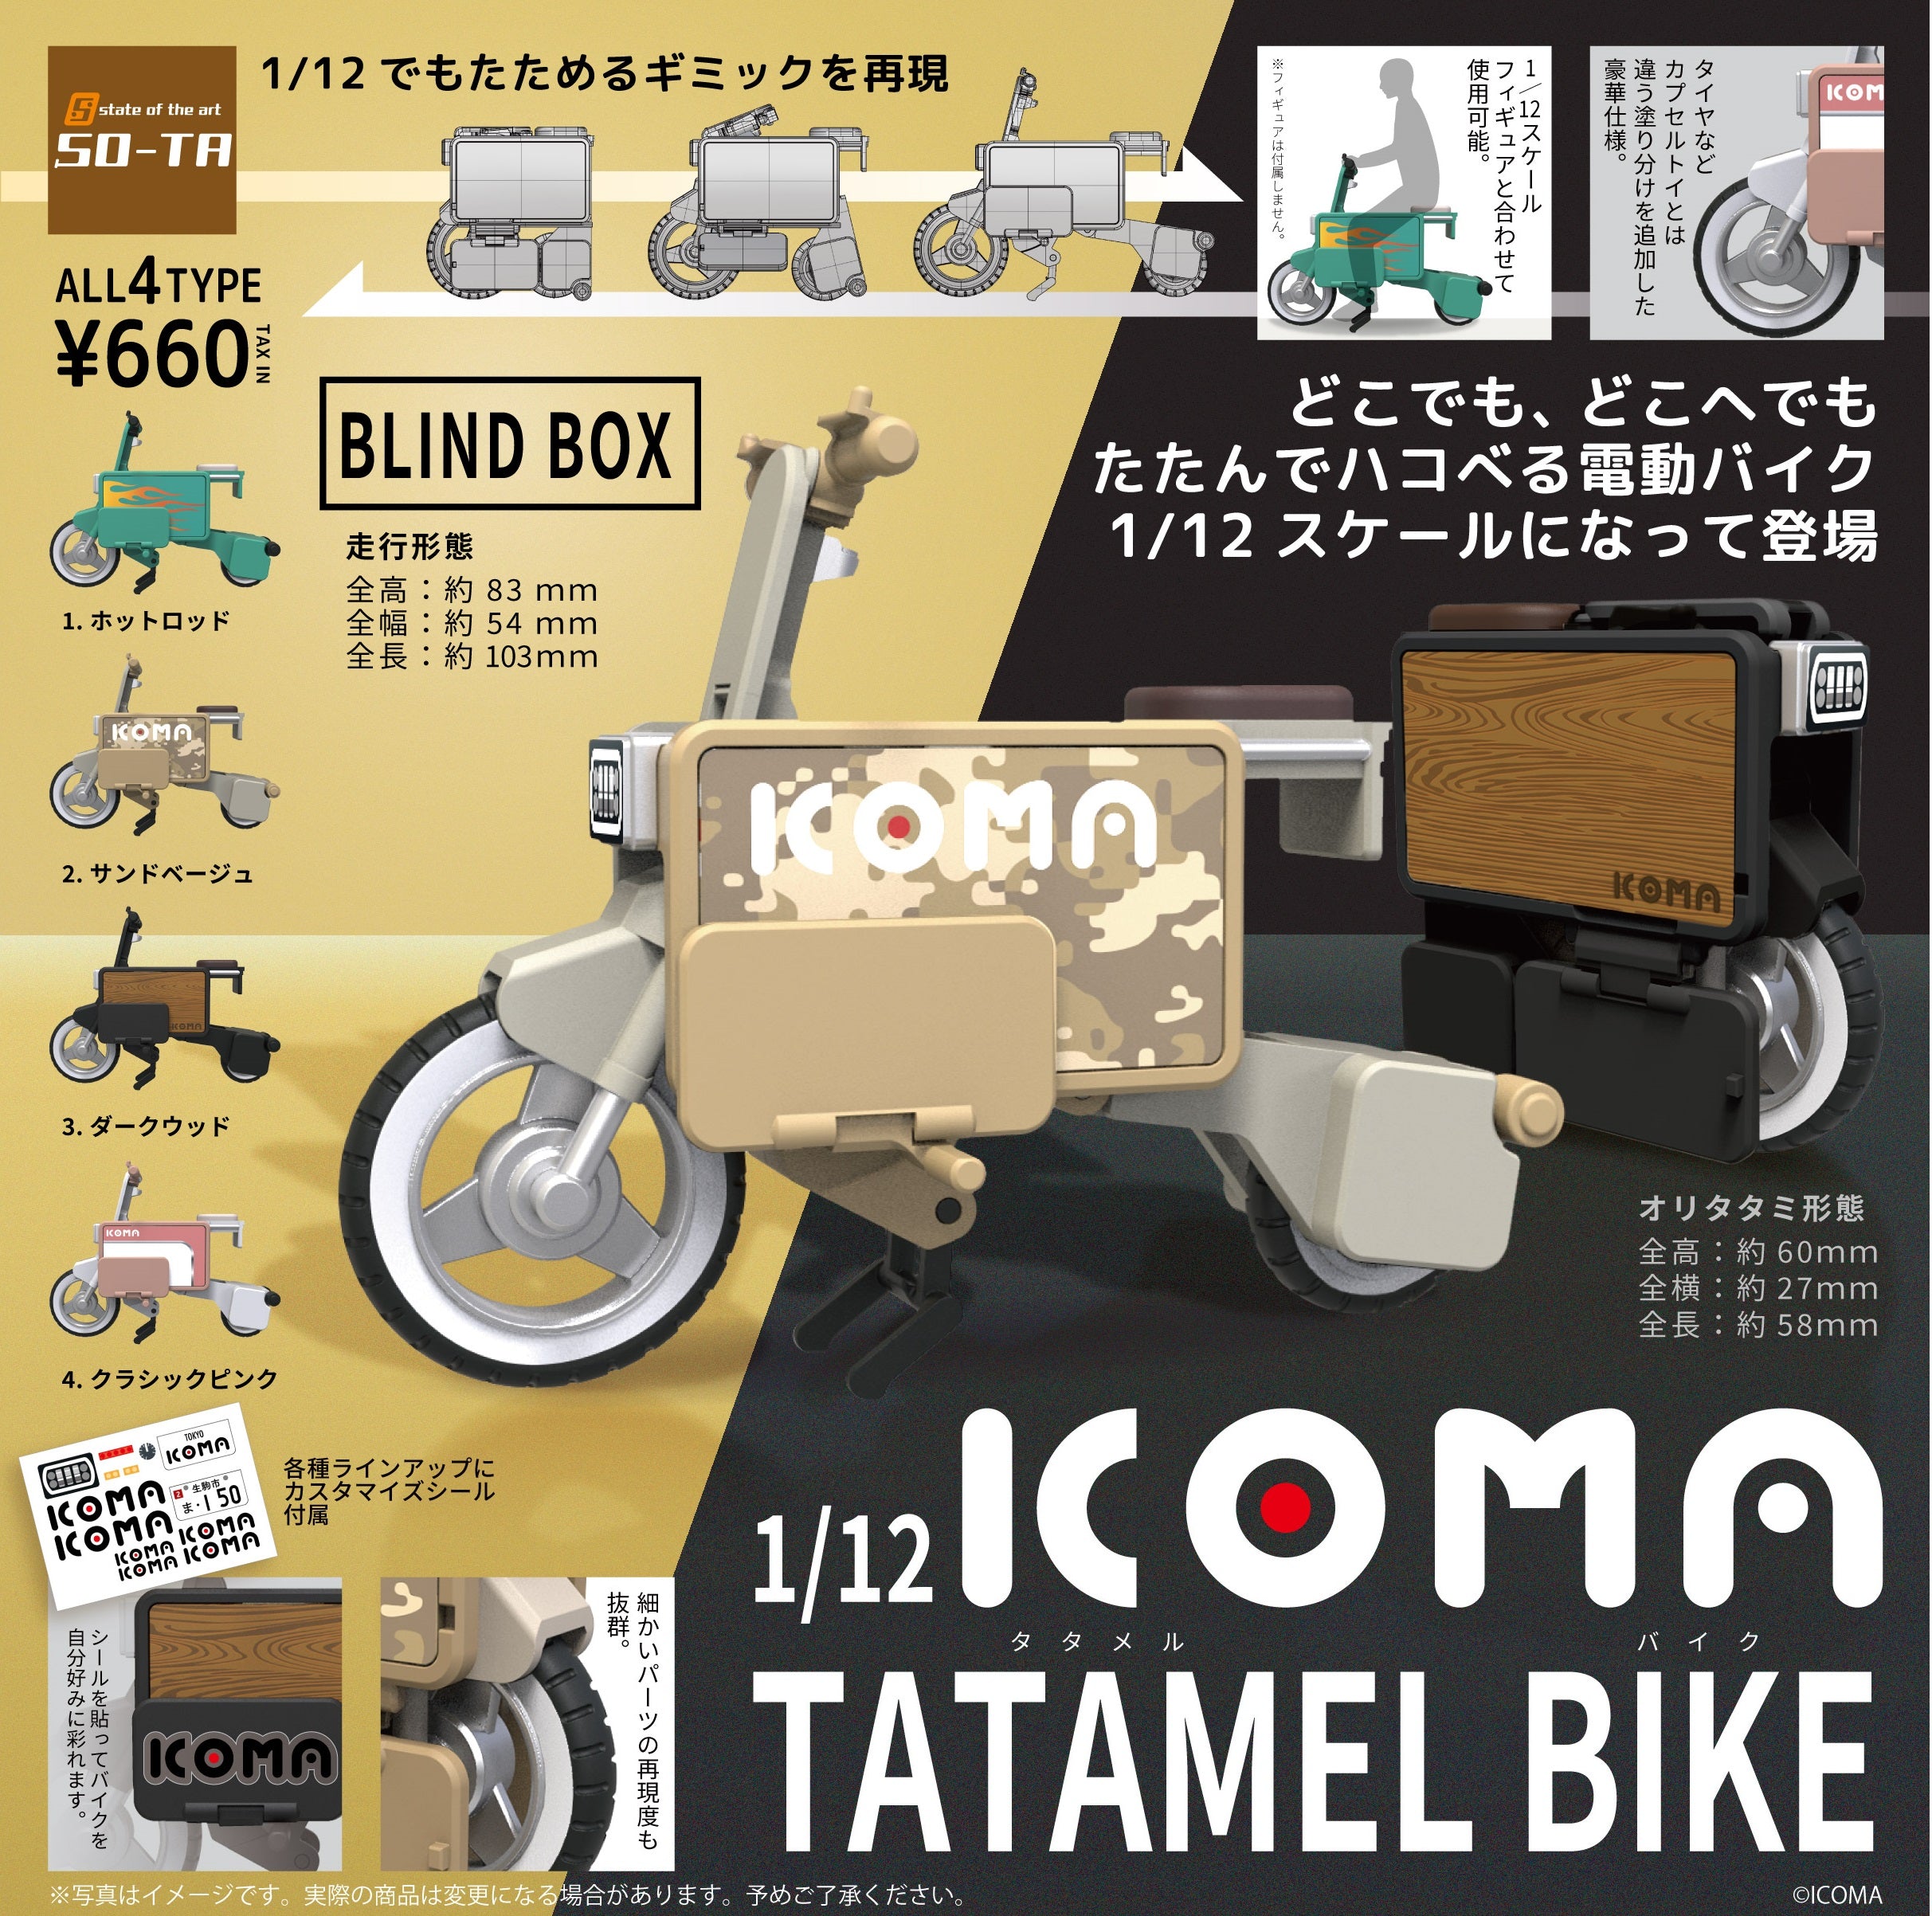 1/12 ICOMA Tatameru Bike [blind box] 